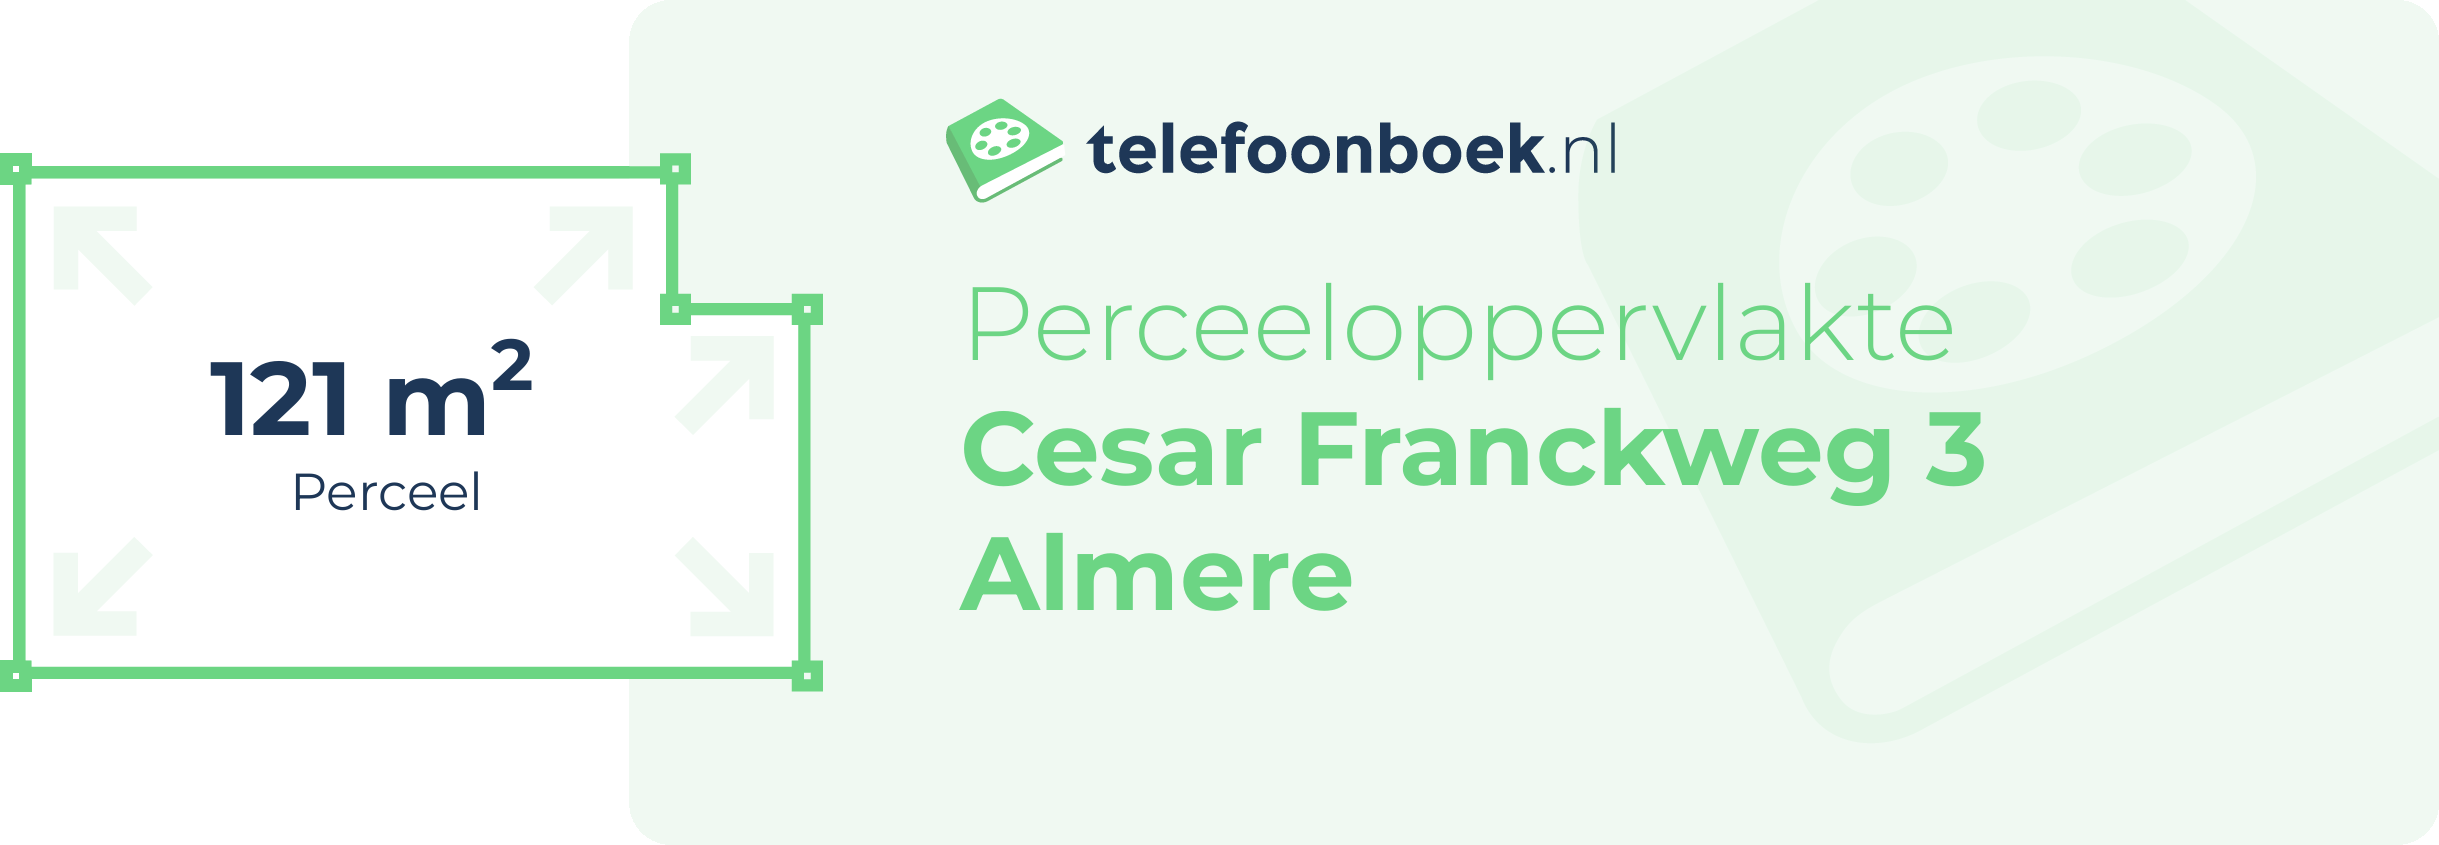 Perceeloppervlakte Cesar Franckweg 3 Almere